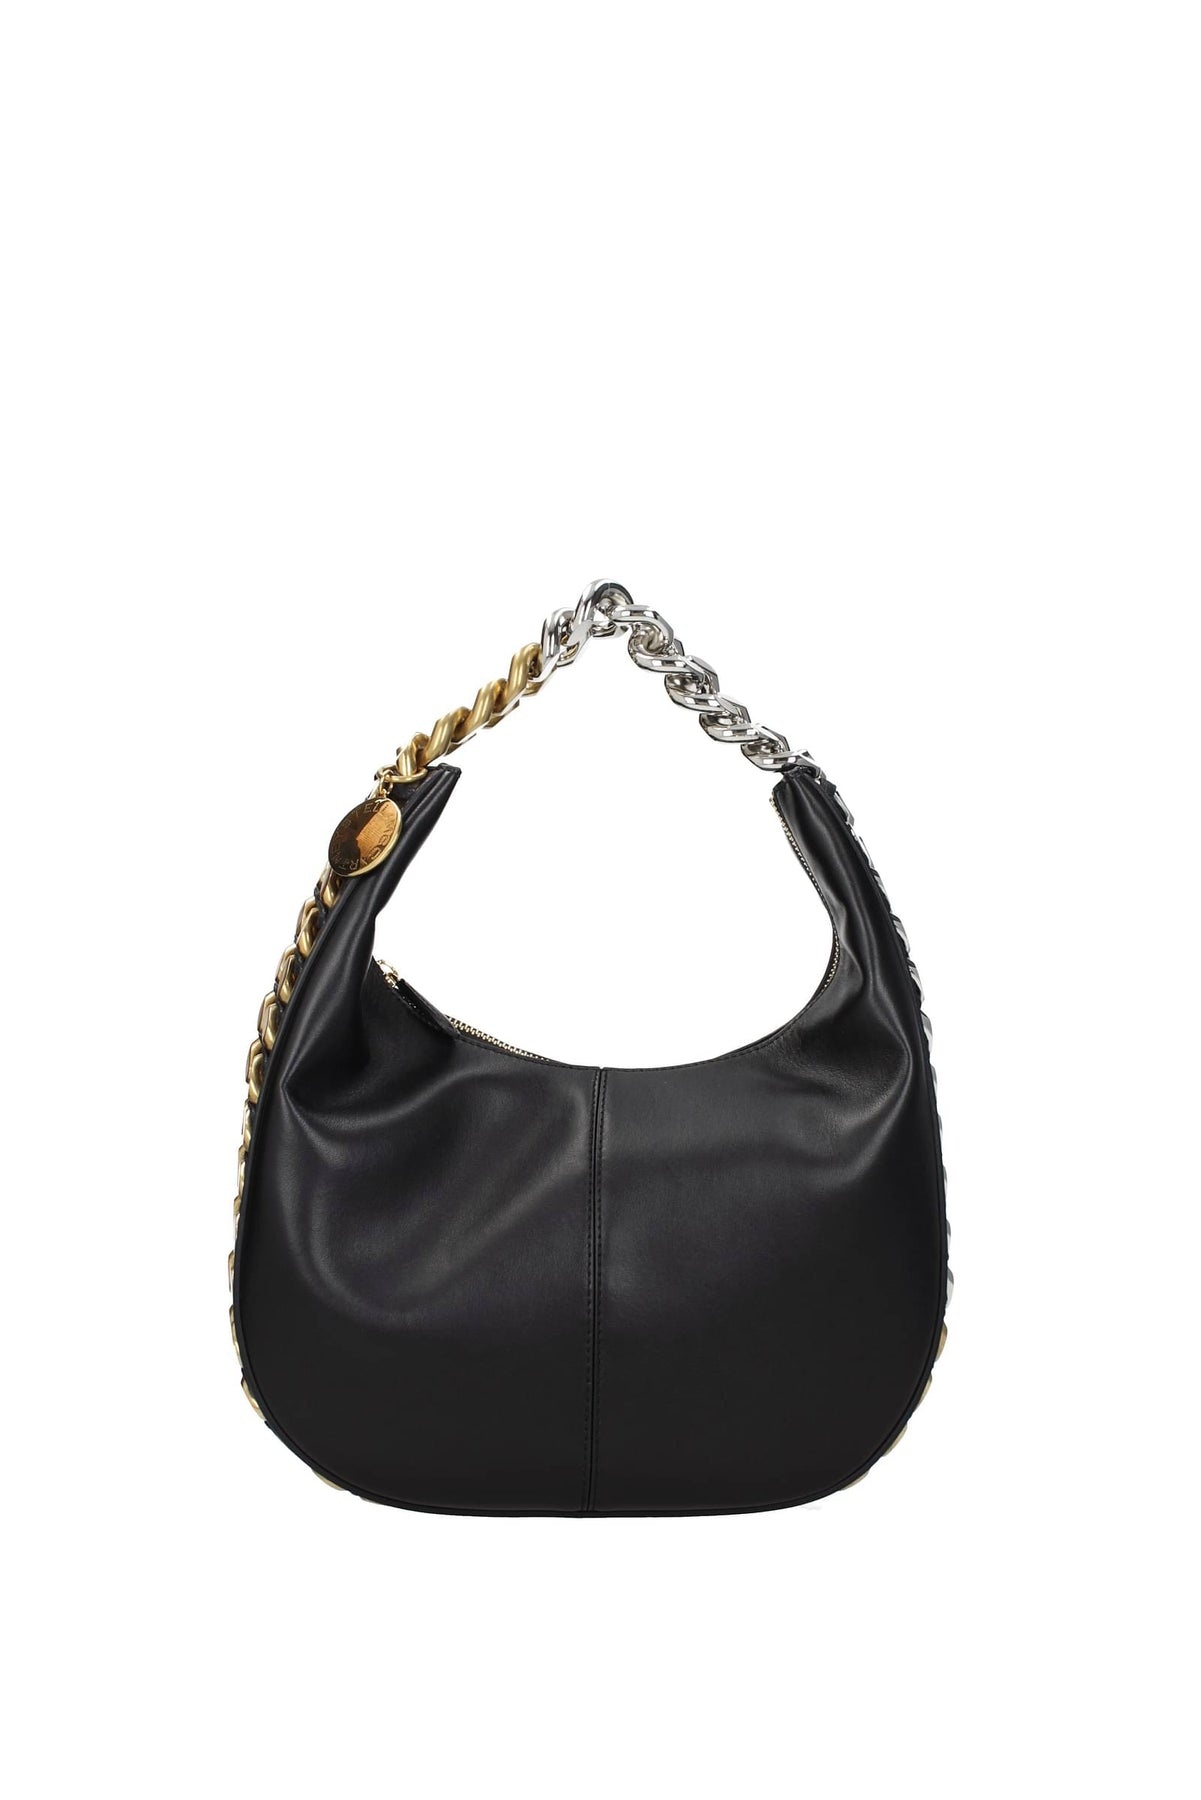 Stella McCartney Women's Frayme Zipit Small Shoulder Bag - Black